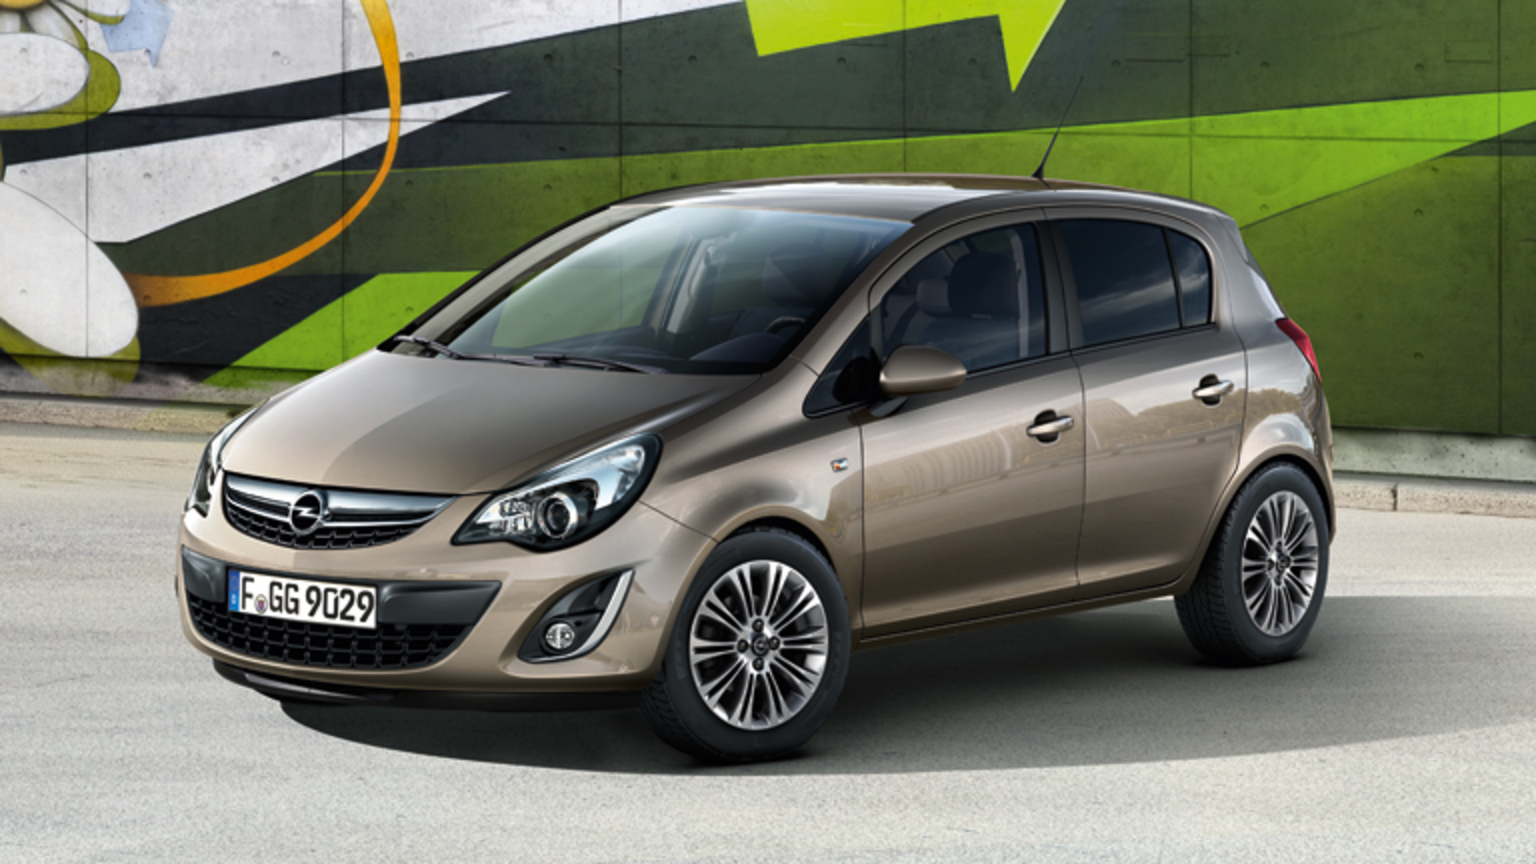 L'Opel Corsa est livrée avec un moteur à essence qui offre des performances étincelantes